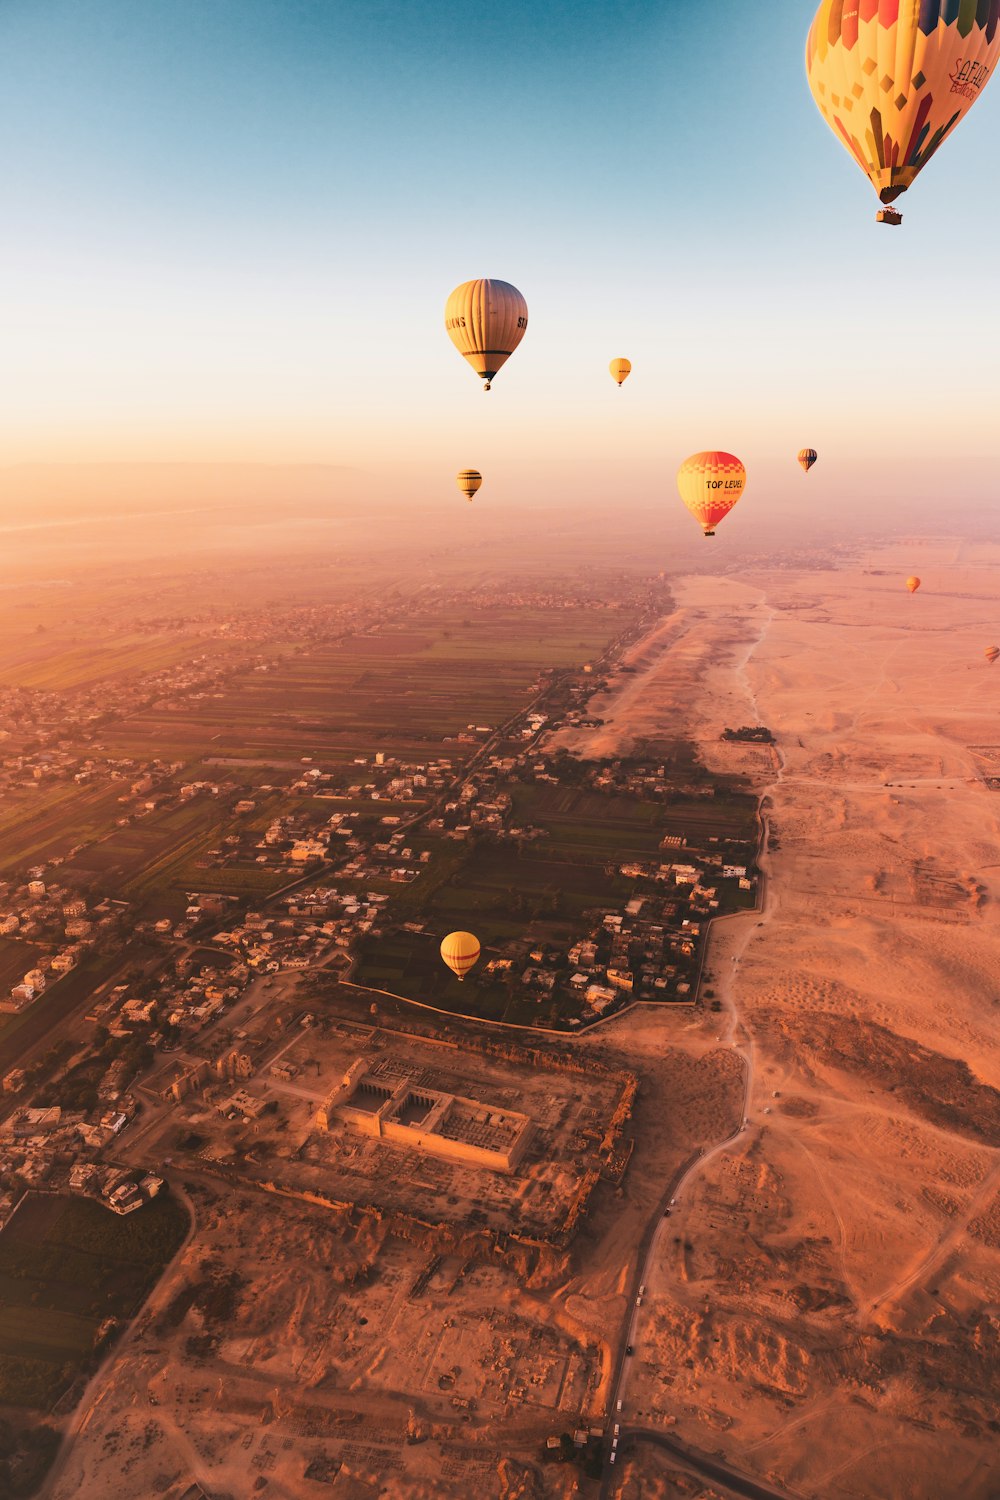 Un grupo de globos aerostáticos volando sobre una ciudad